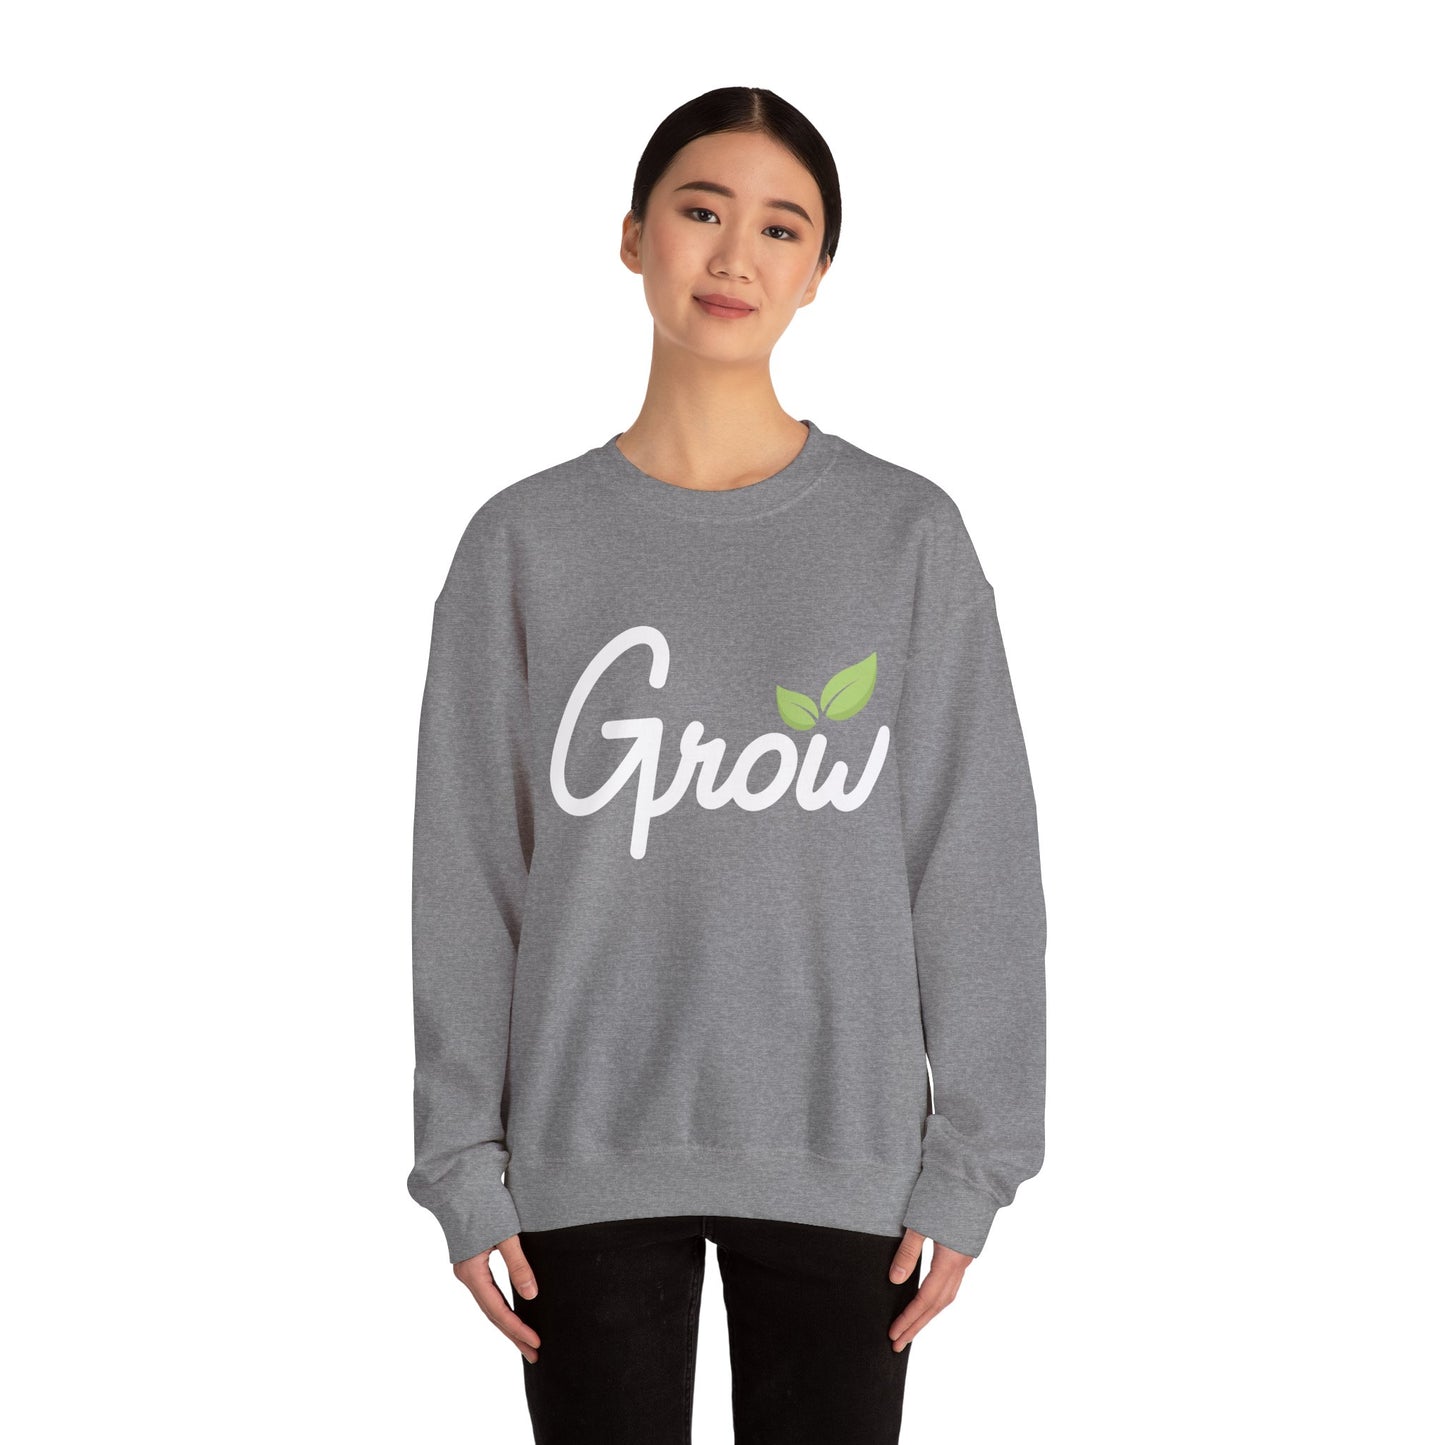 Grow Crewneck Sweatshirt